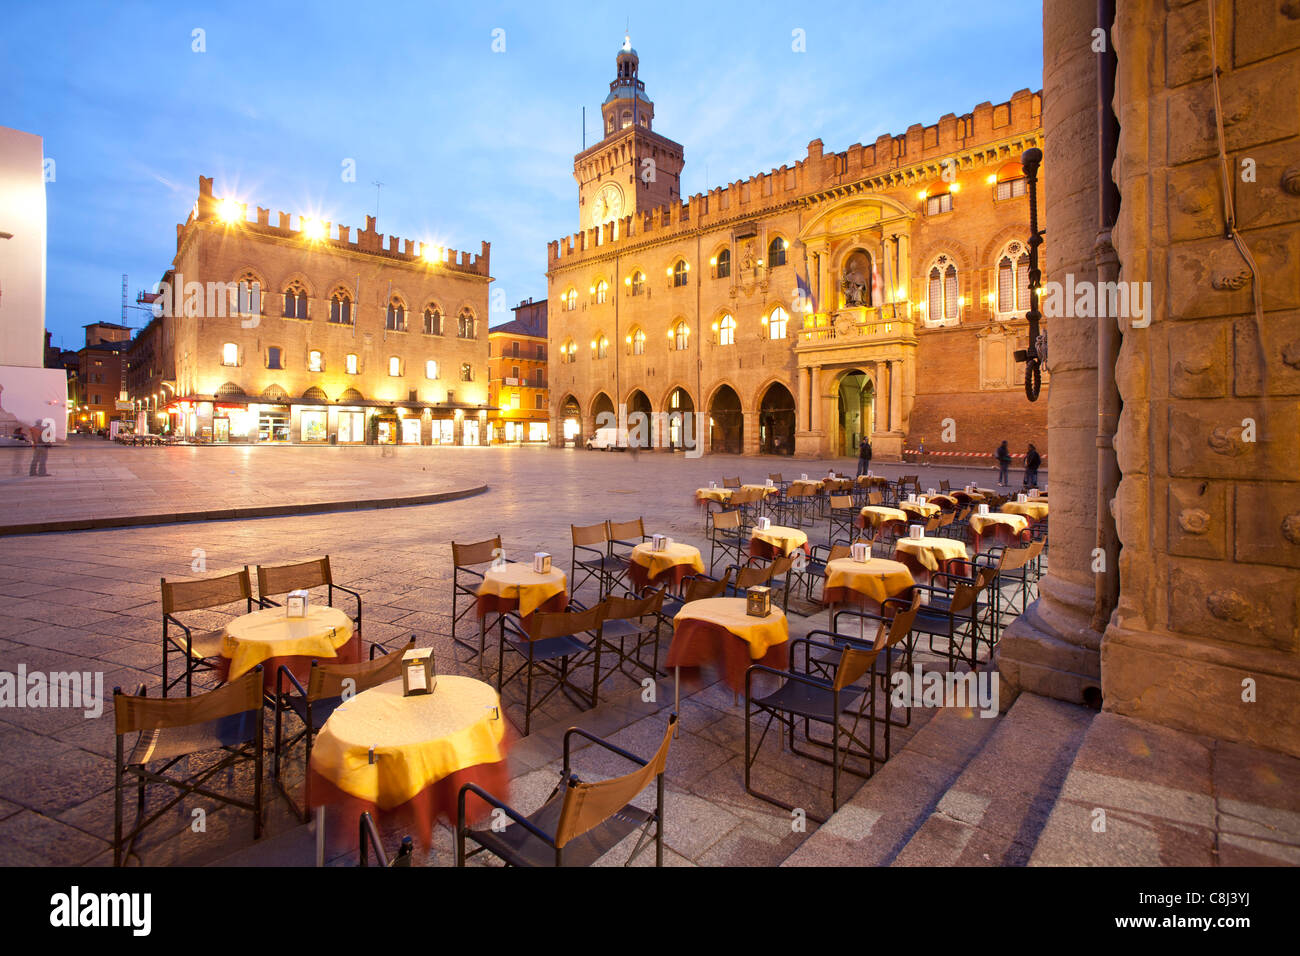 Arkade, Bogengang, Bologna, Emilia Romagna, Italien, Laube, Piazza, Piazza Maggiore, Platz Stock Photo